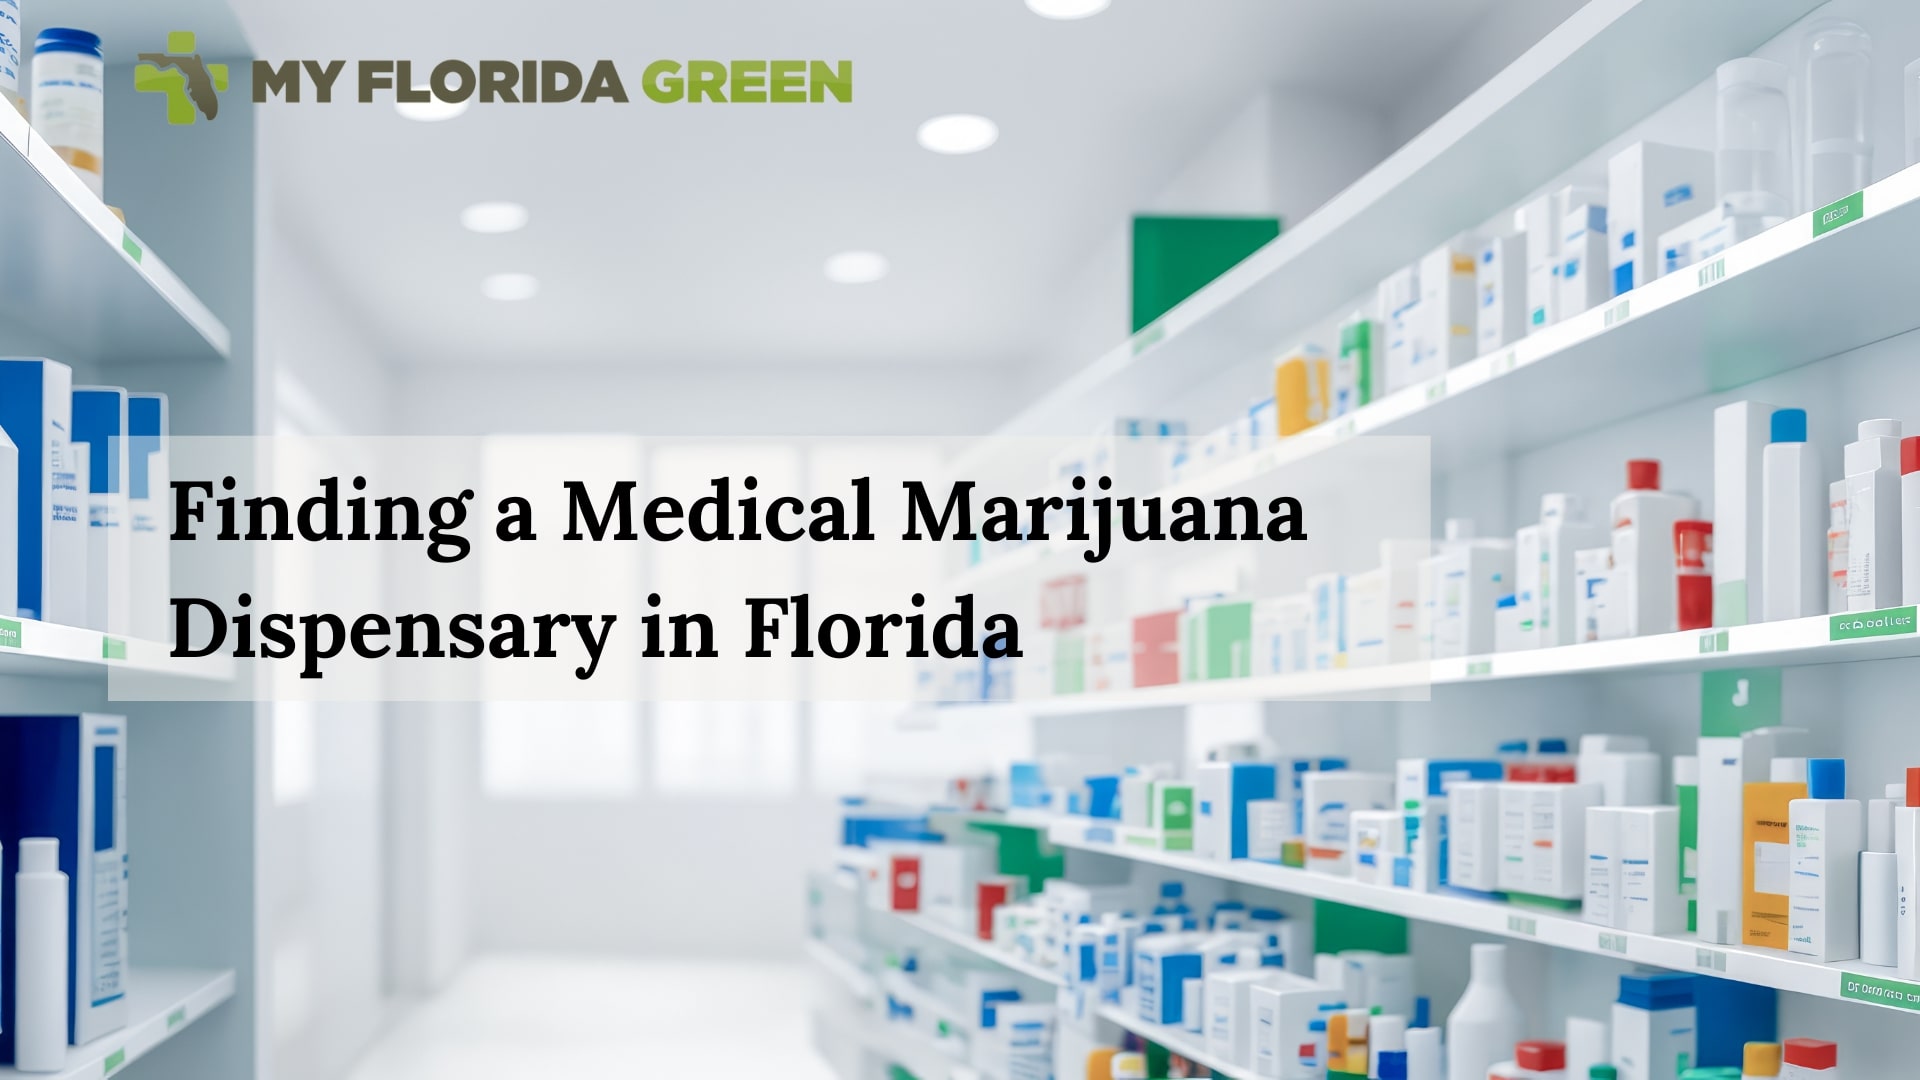 “Finding a Medical Marijuana Dispensary in Florida”